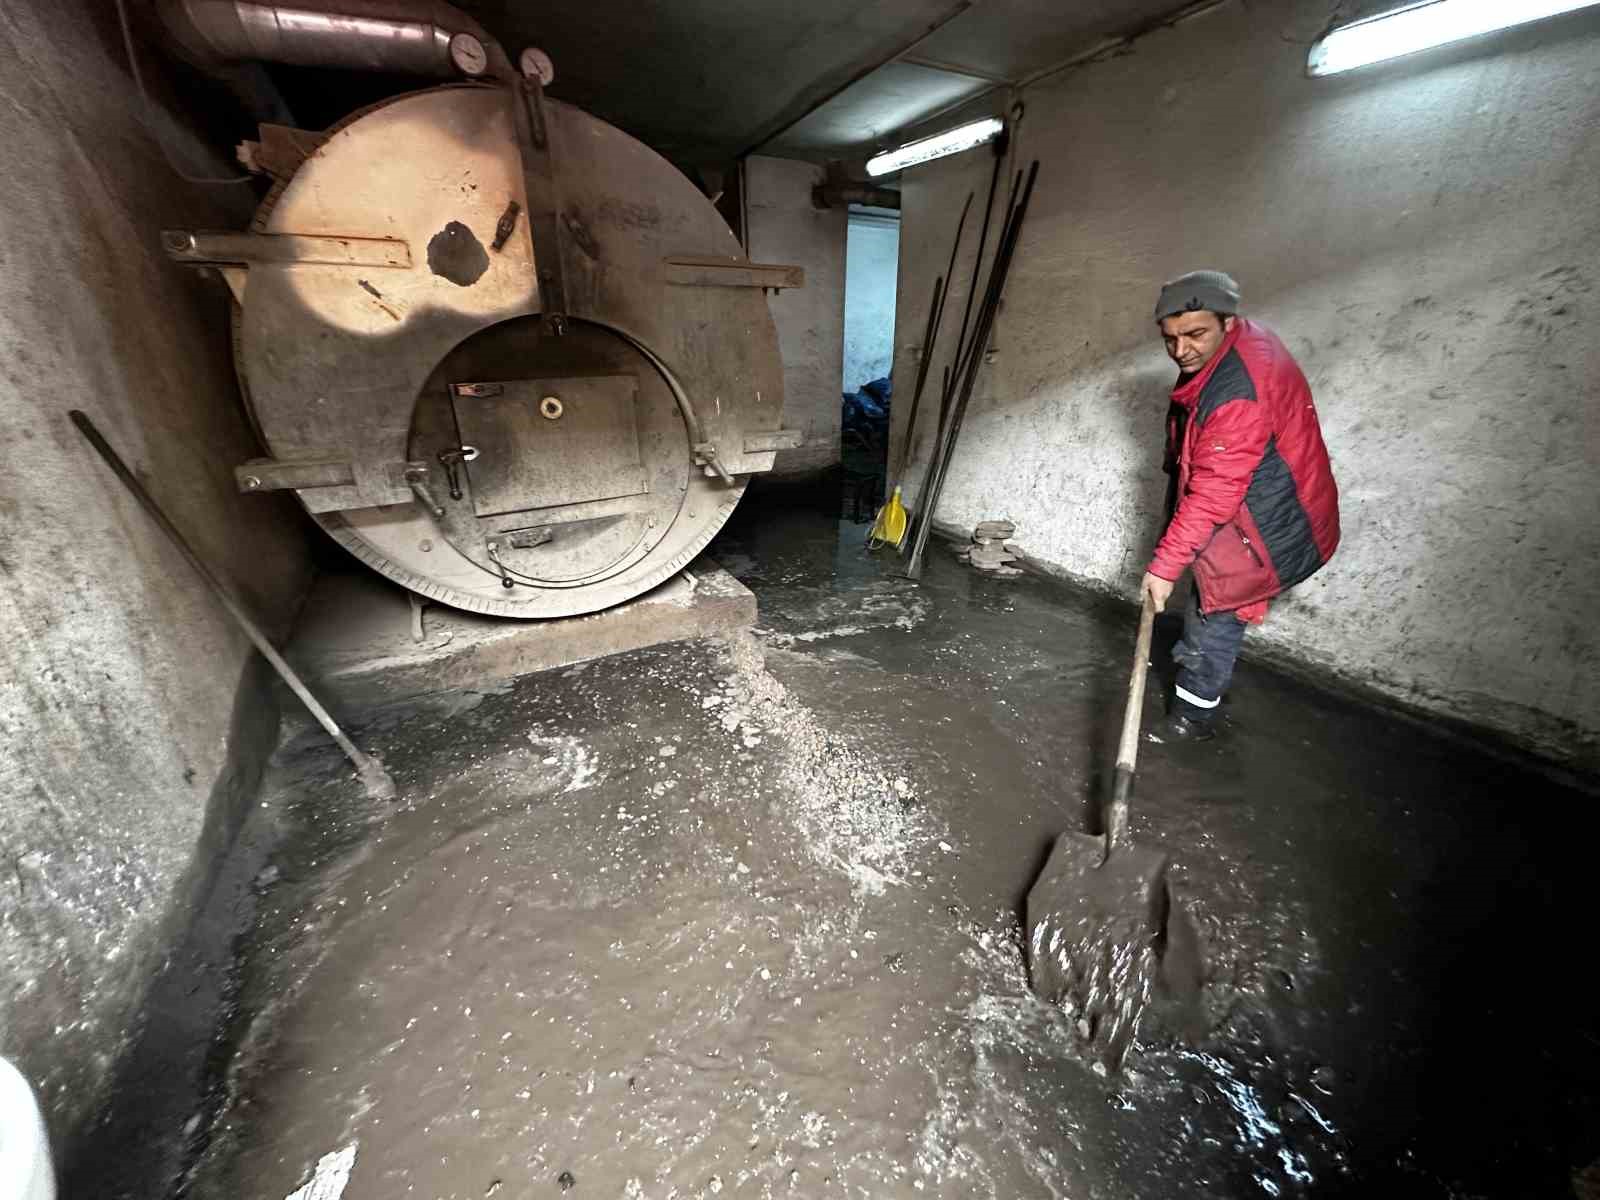 Yüksekova’da yoğun yağışlar sonrası binanın kalorifer dairesi sular altında kaldı
